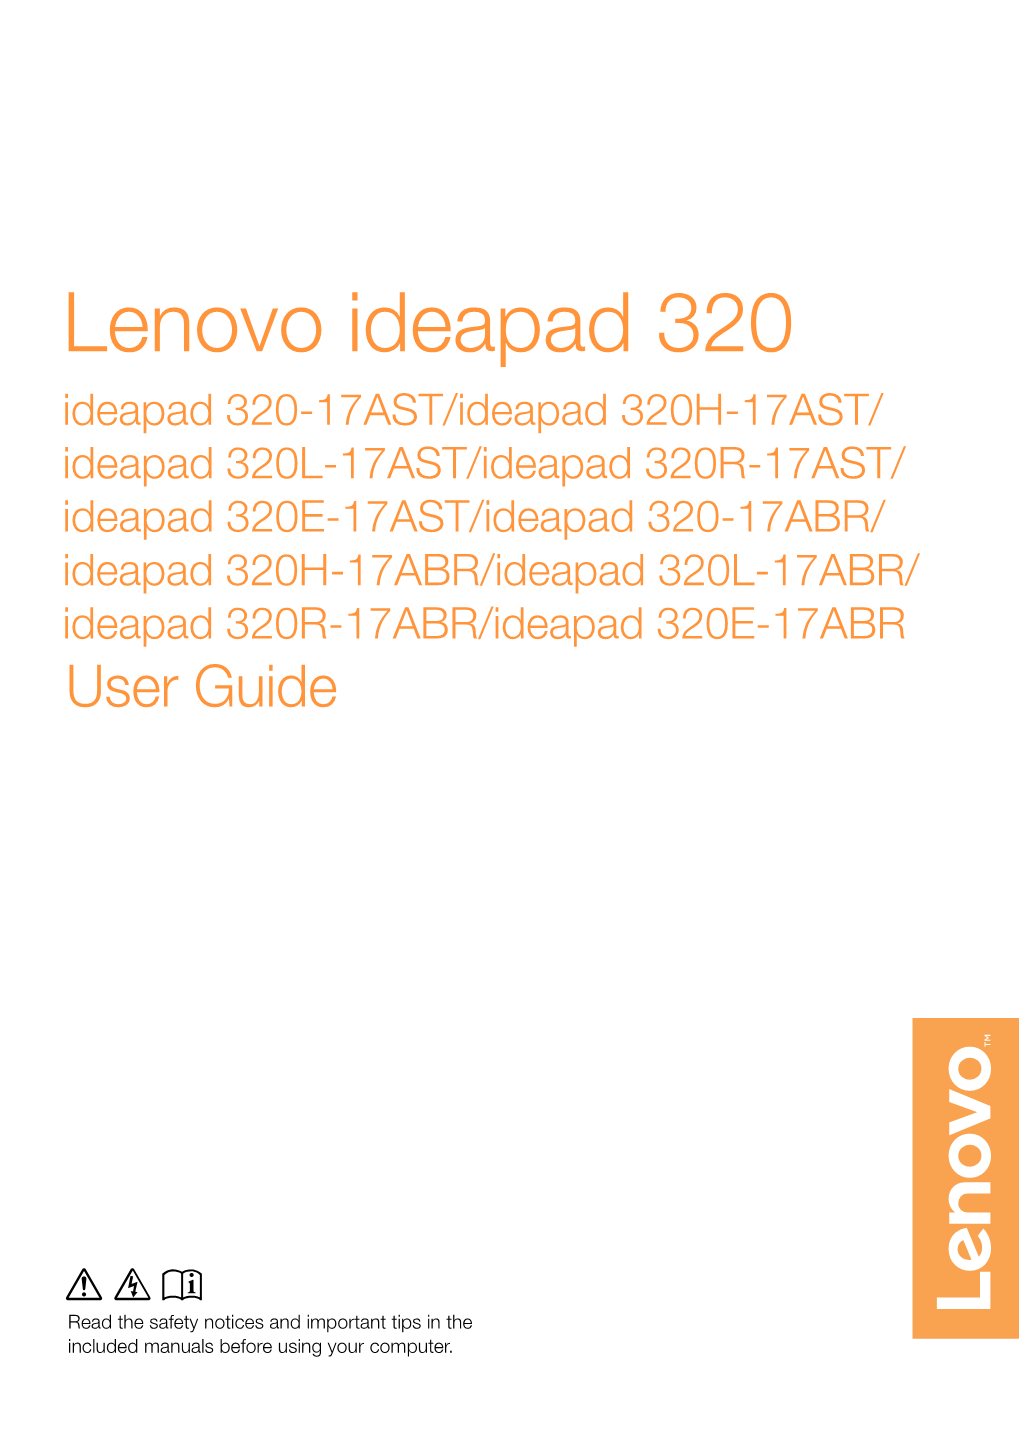 Lenovo Ideapad 320-17AST&ABR User Guide